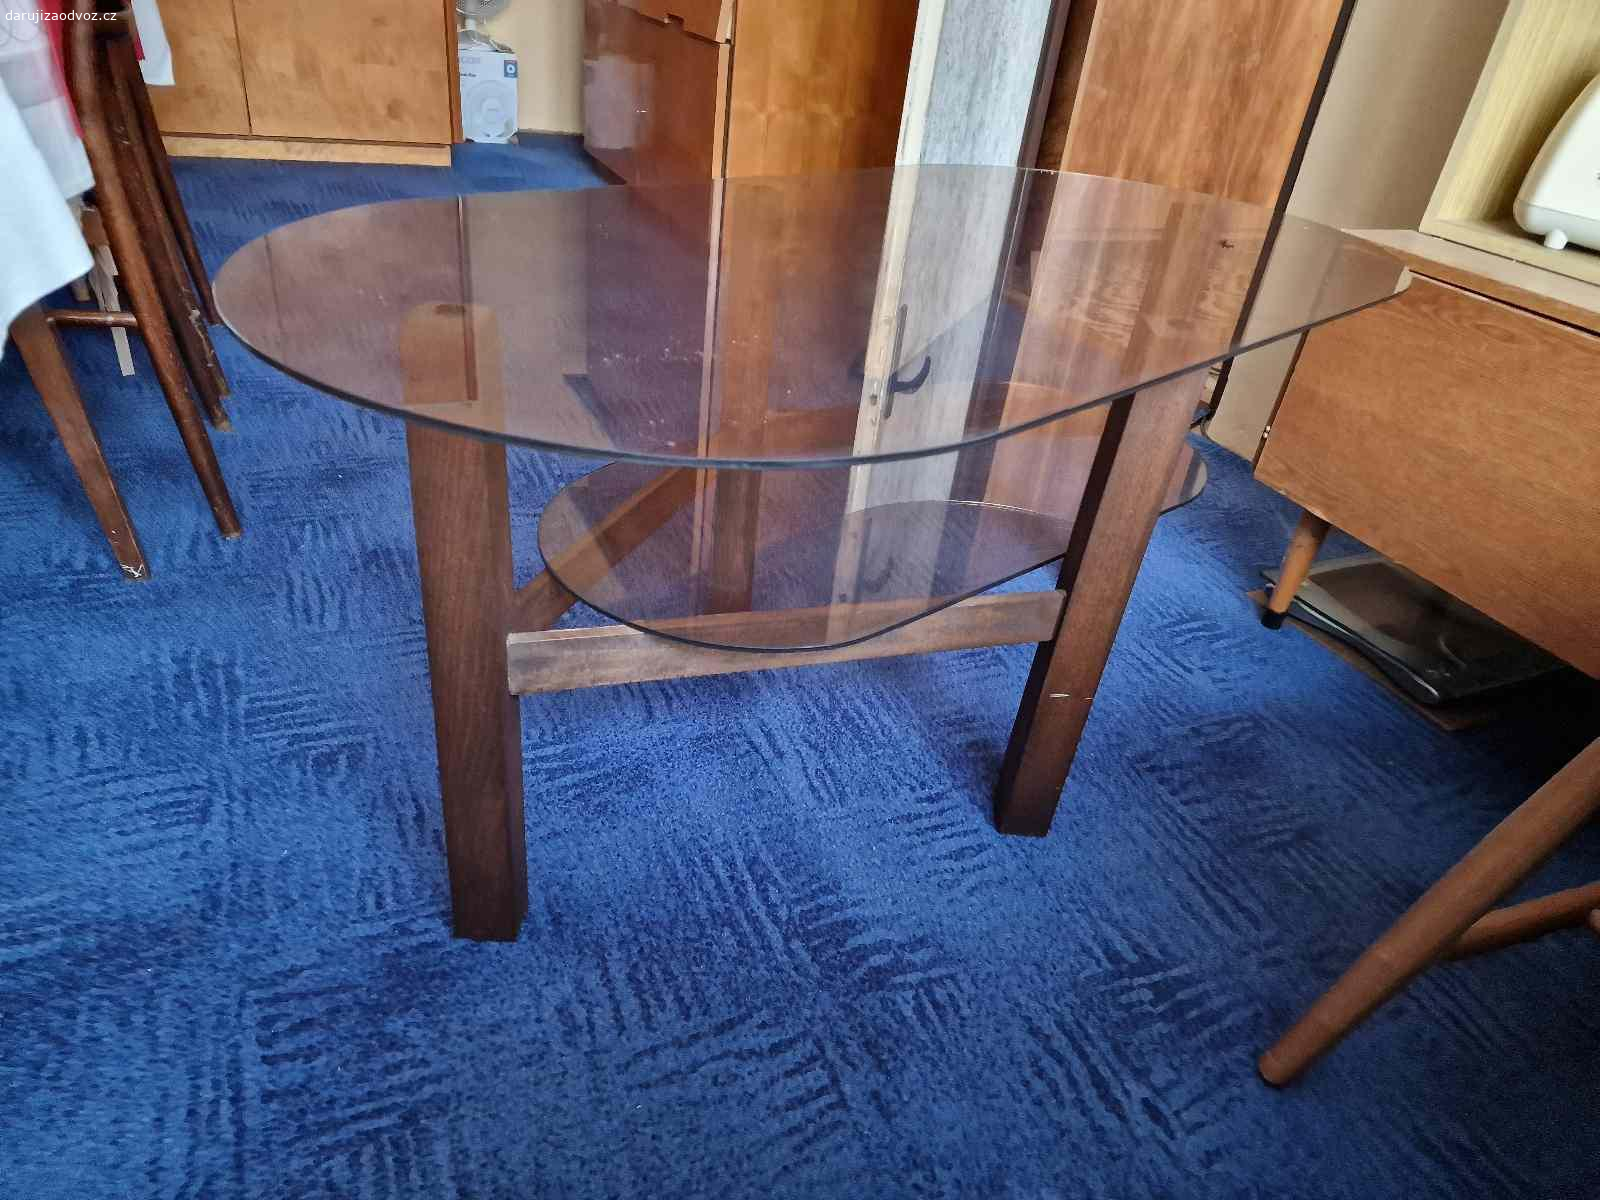 Daruji skleněný konferenční stolek. Daruji skleněný konferenční stolek, dřevěné nohy, skleněná horni a spodní deska.